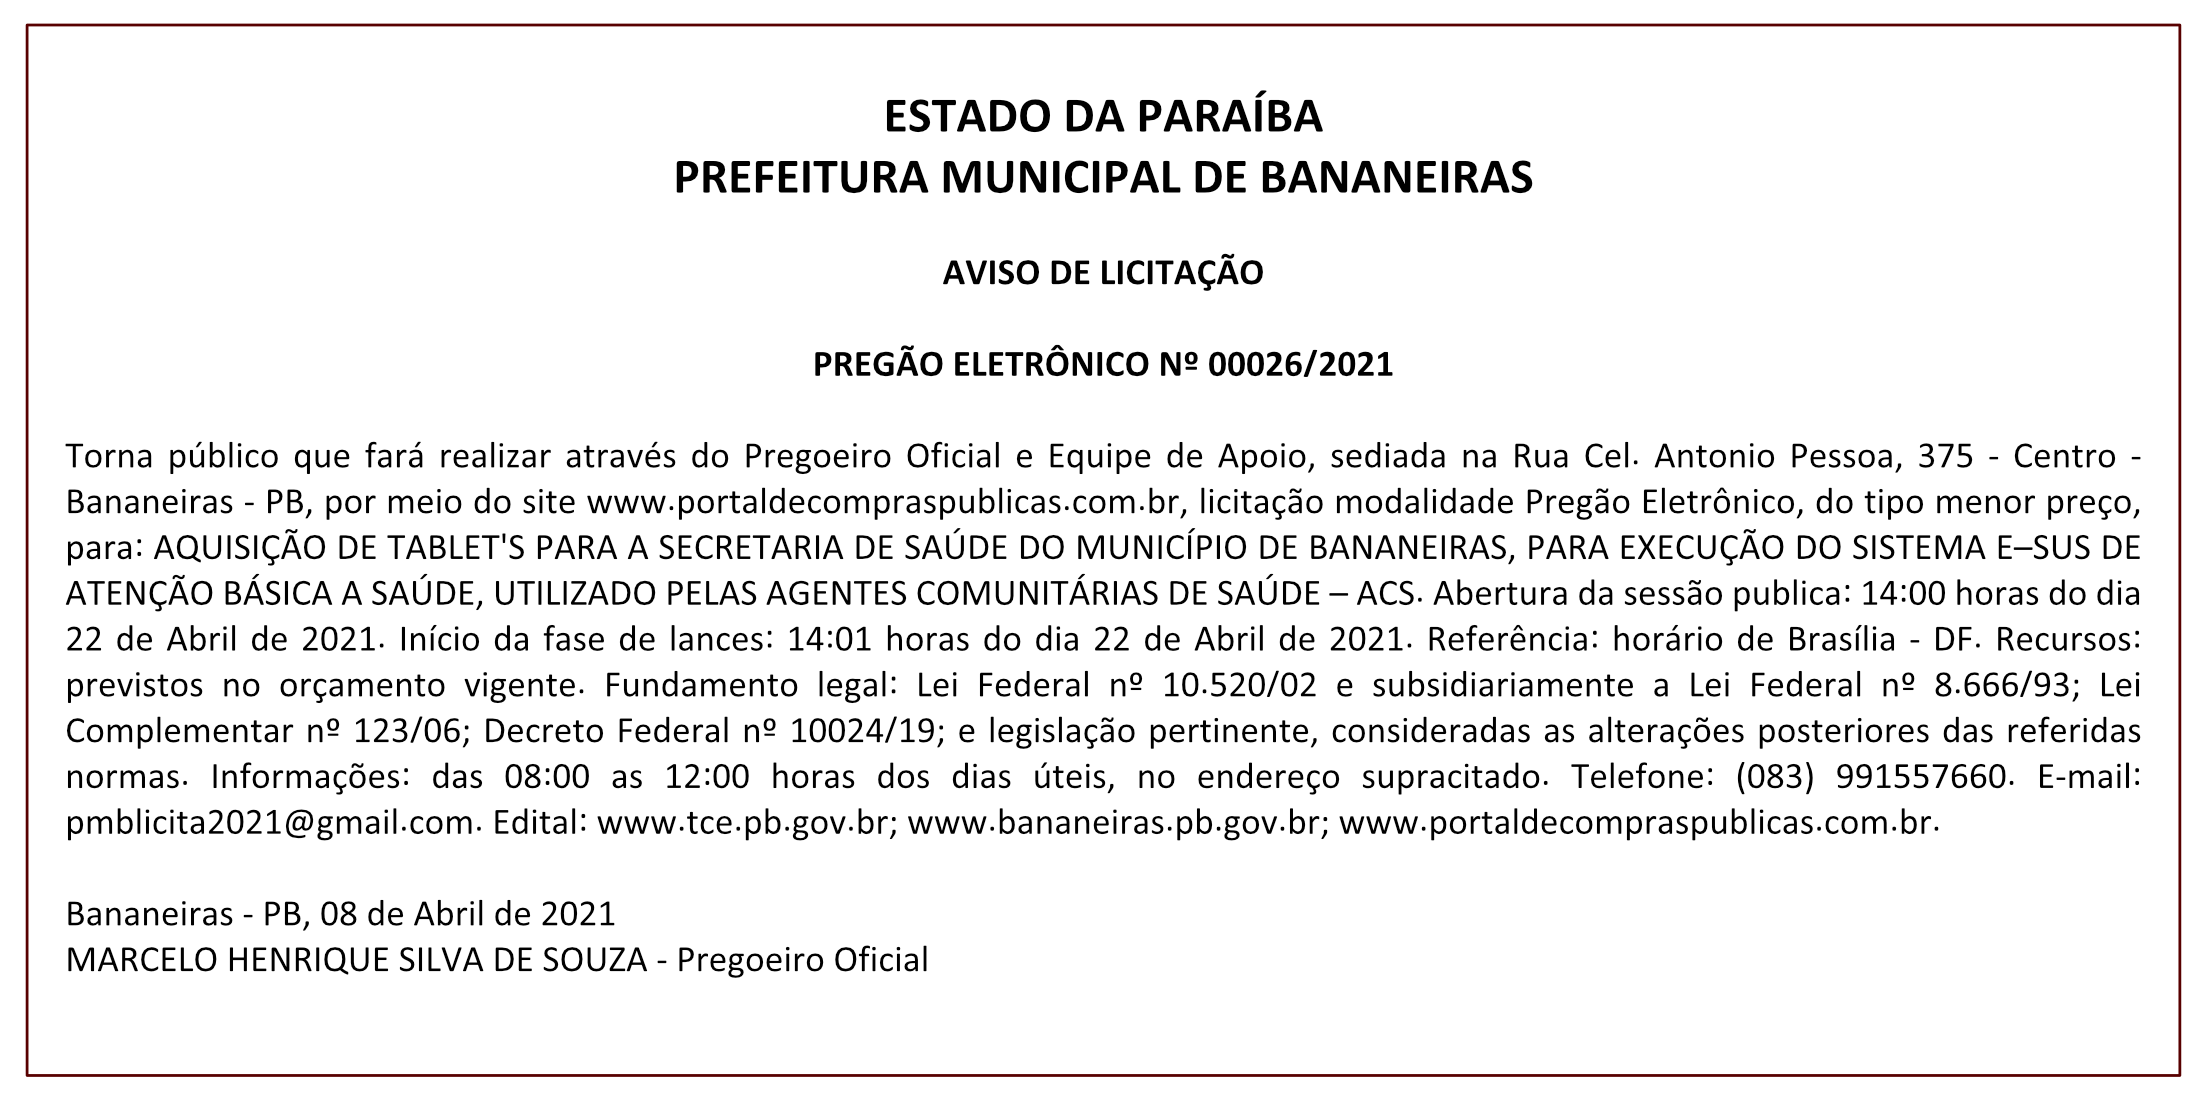 PREFEITURA MUNICIPAL DE BANANEIRAS – AVISO DE LICITAÇÃO – PREGÃO ELETRÔNICO Nº 00026/2021